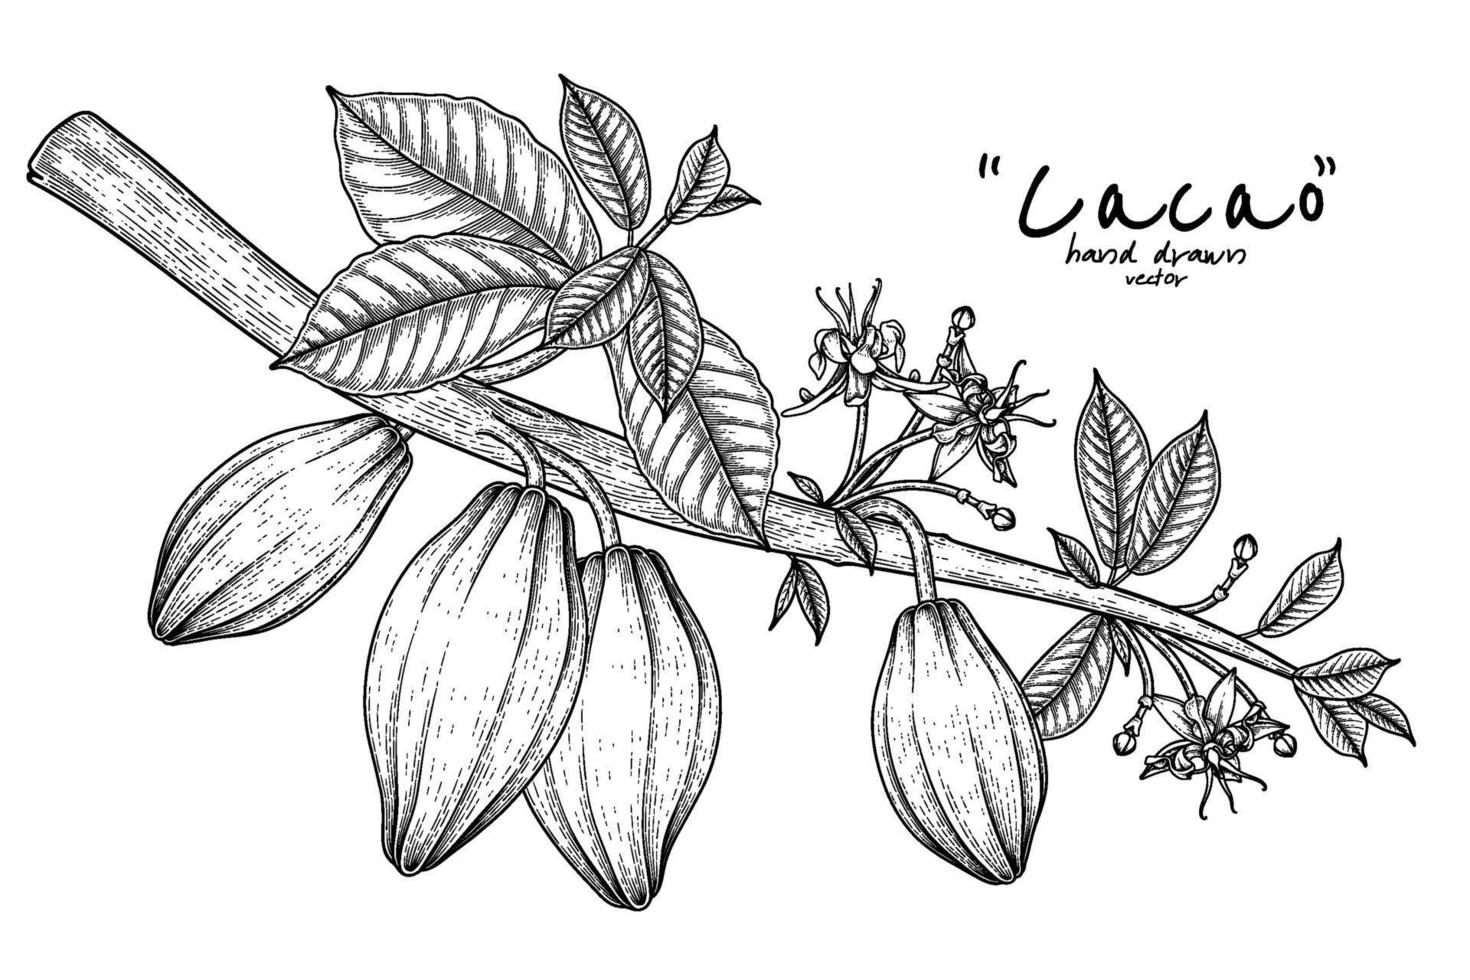 cacaotak met fruit hand getrokken illustratie vector